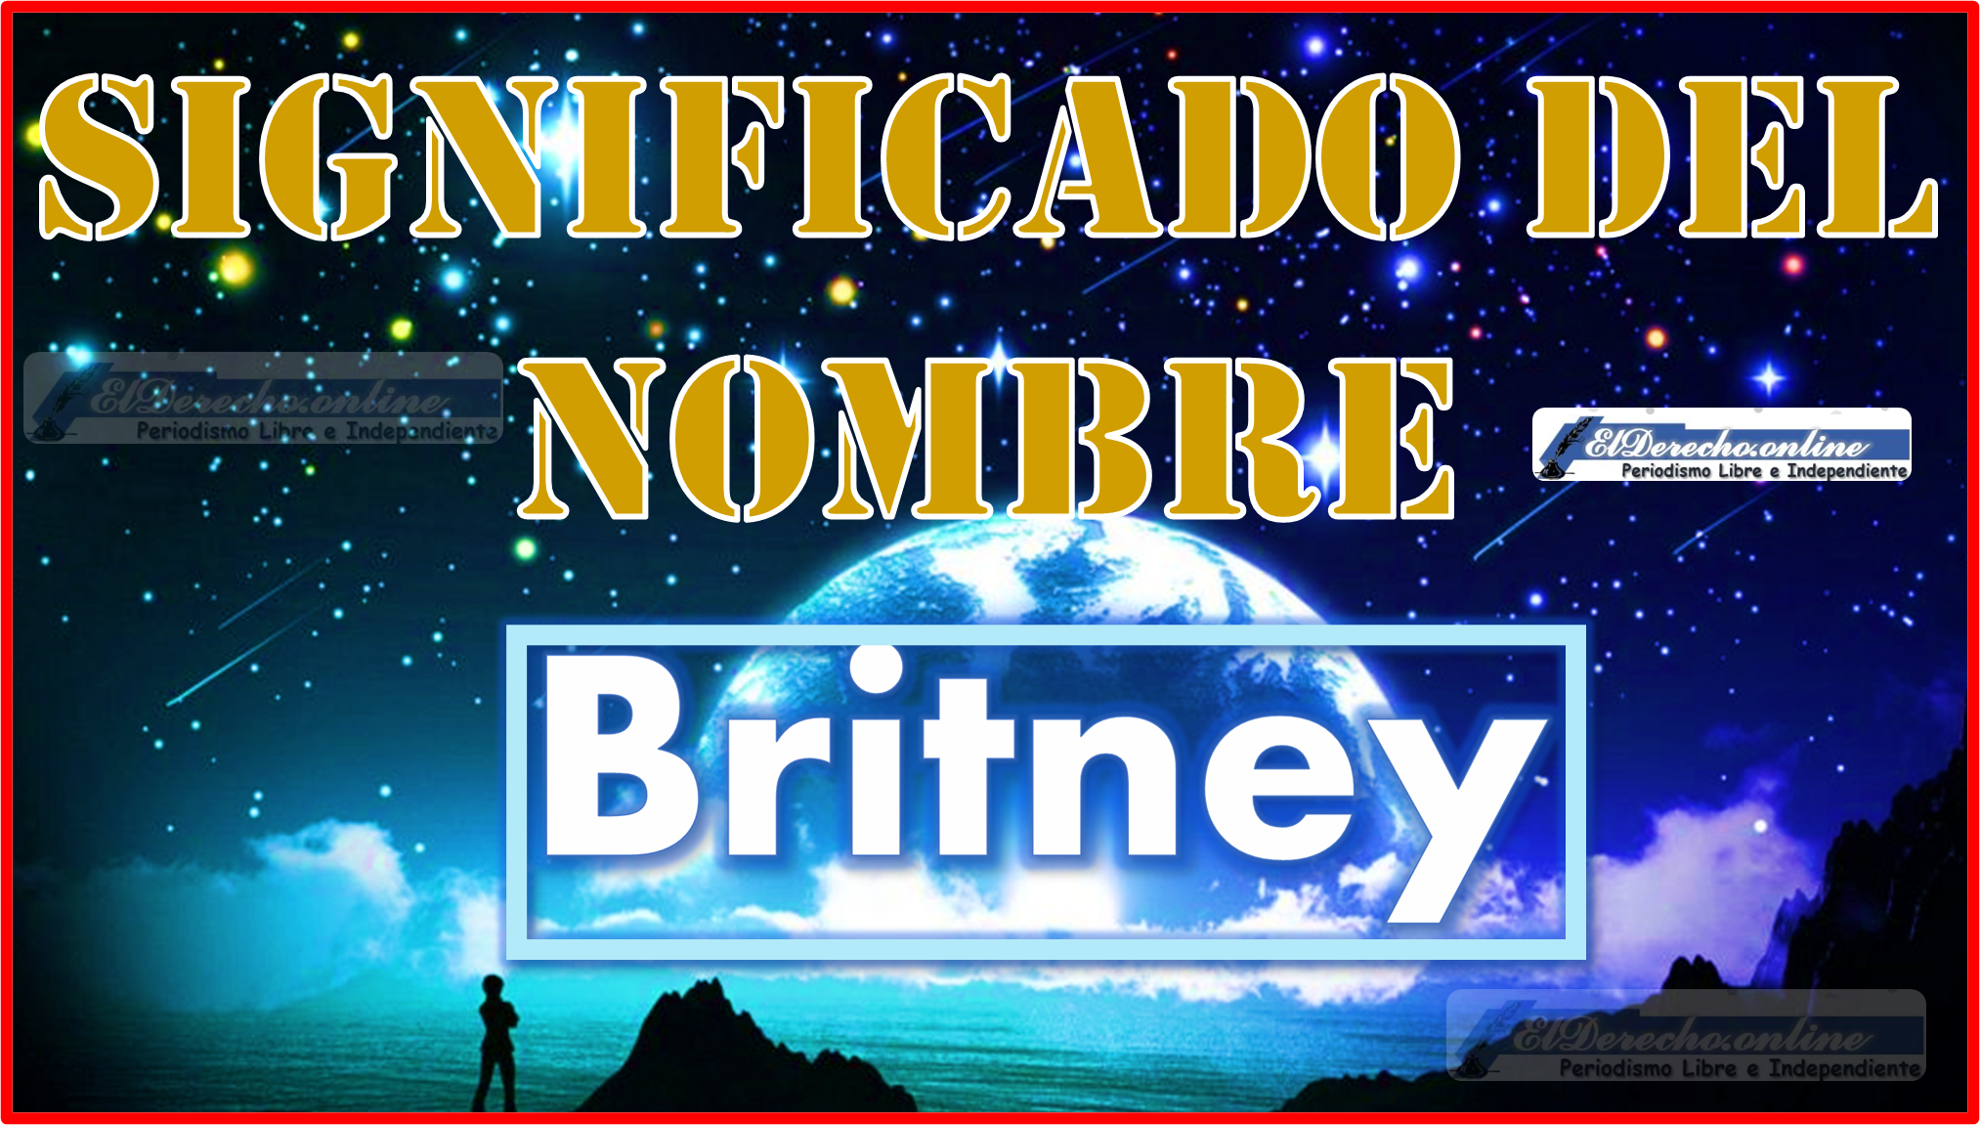 Significado del nombre Britney, su origen y más